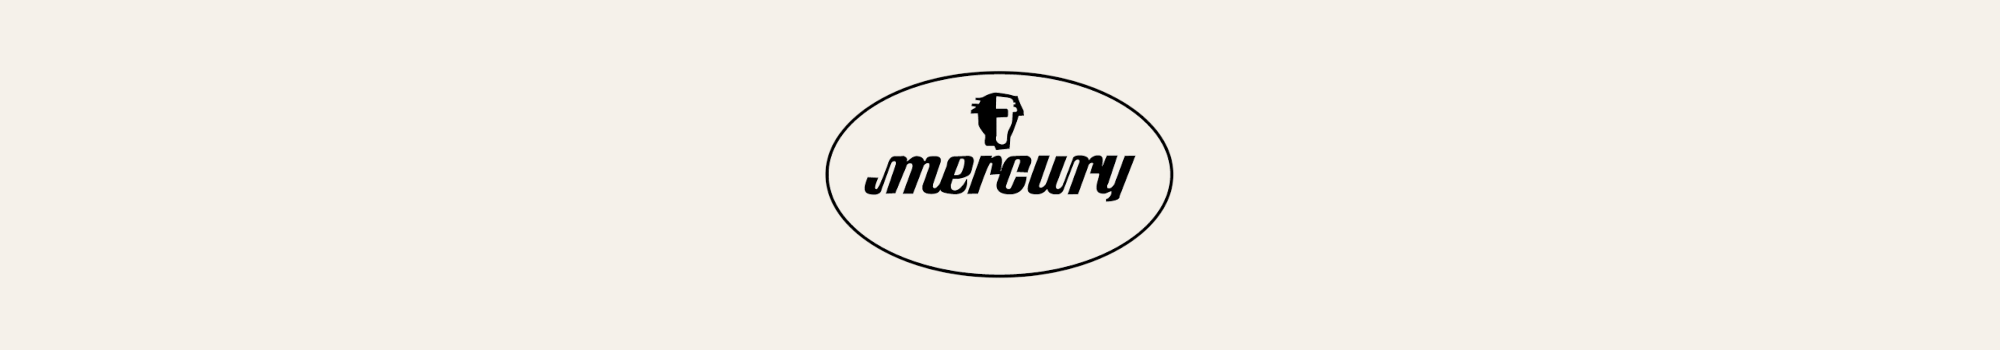 Mercury Records logotyp